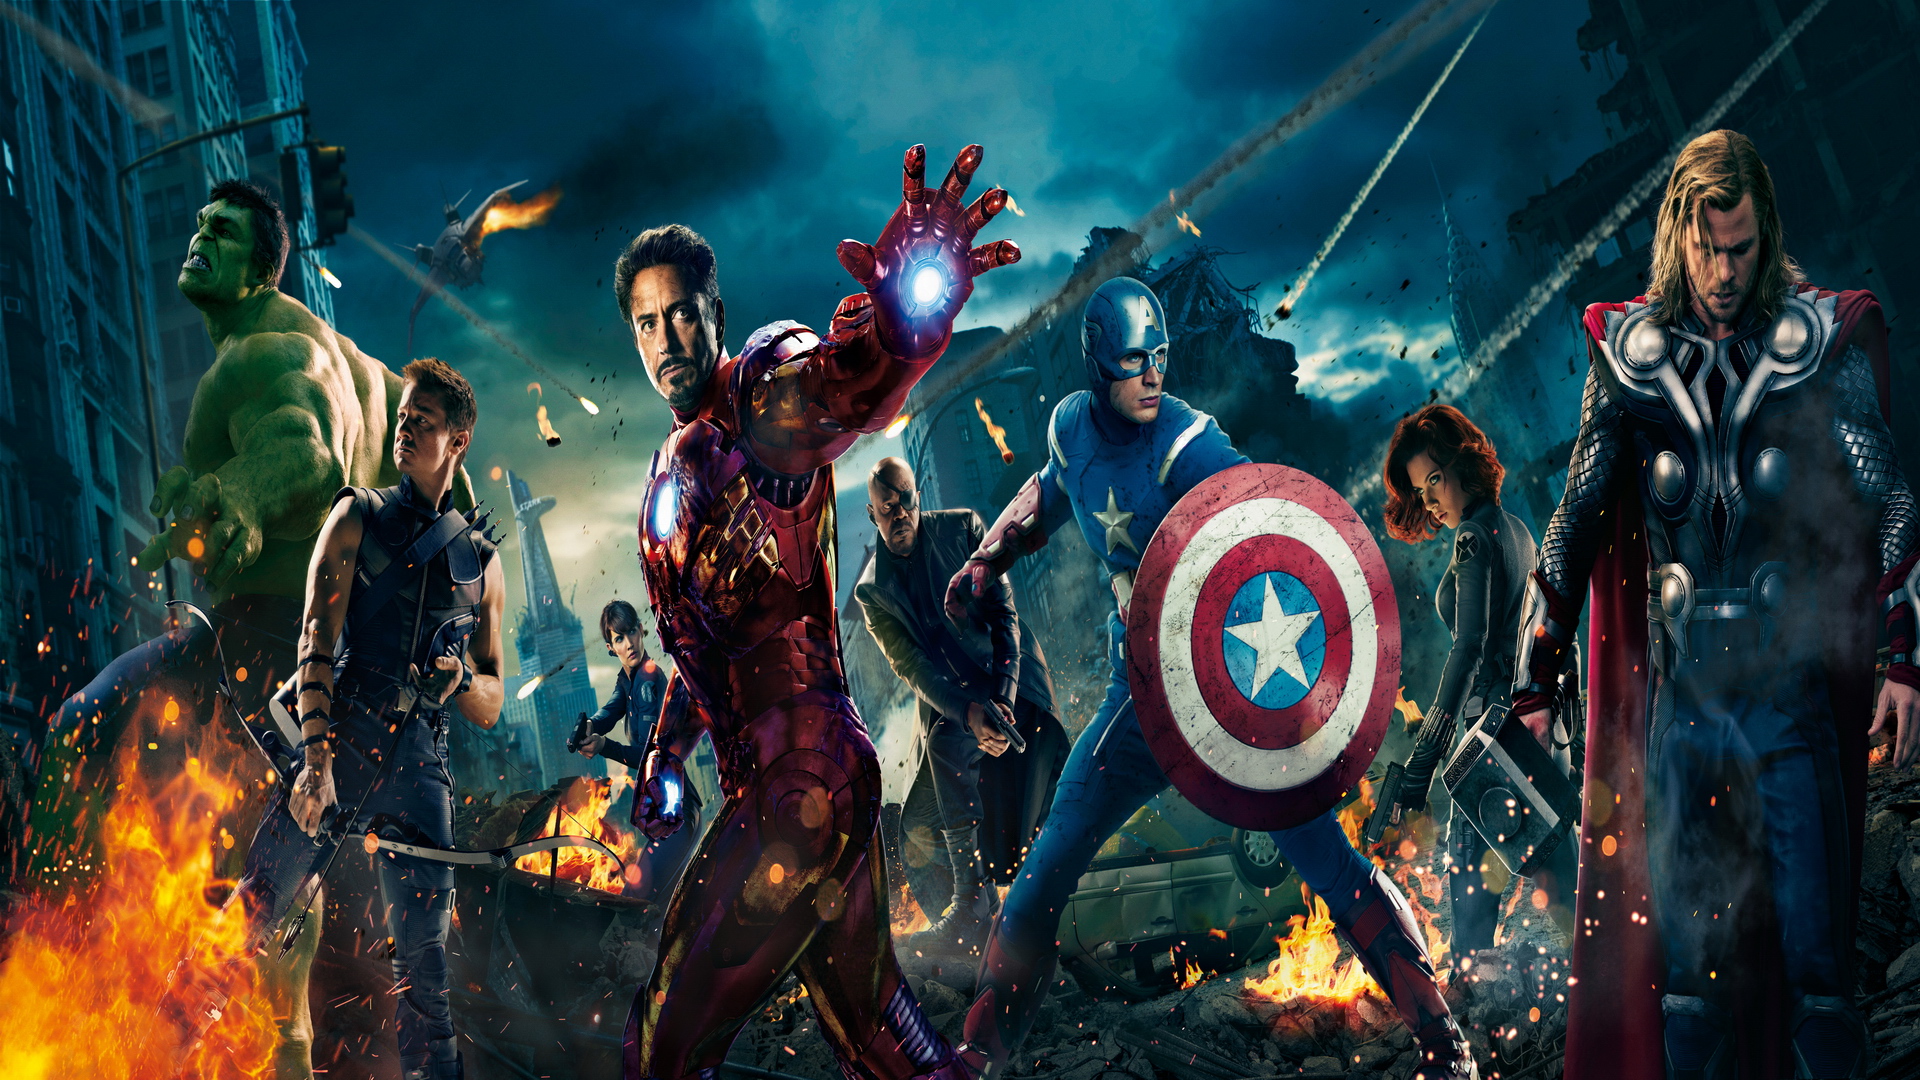 [42+] Avengers HD Wallpapers 1080p | WallpaperSafari